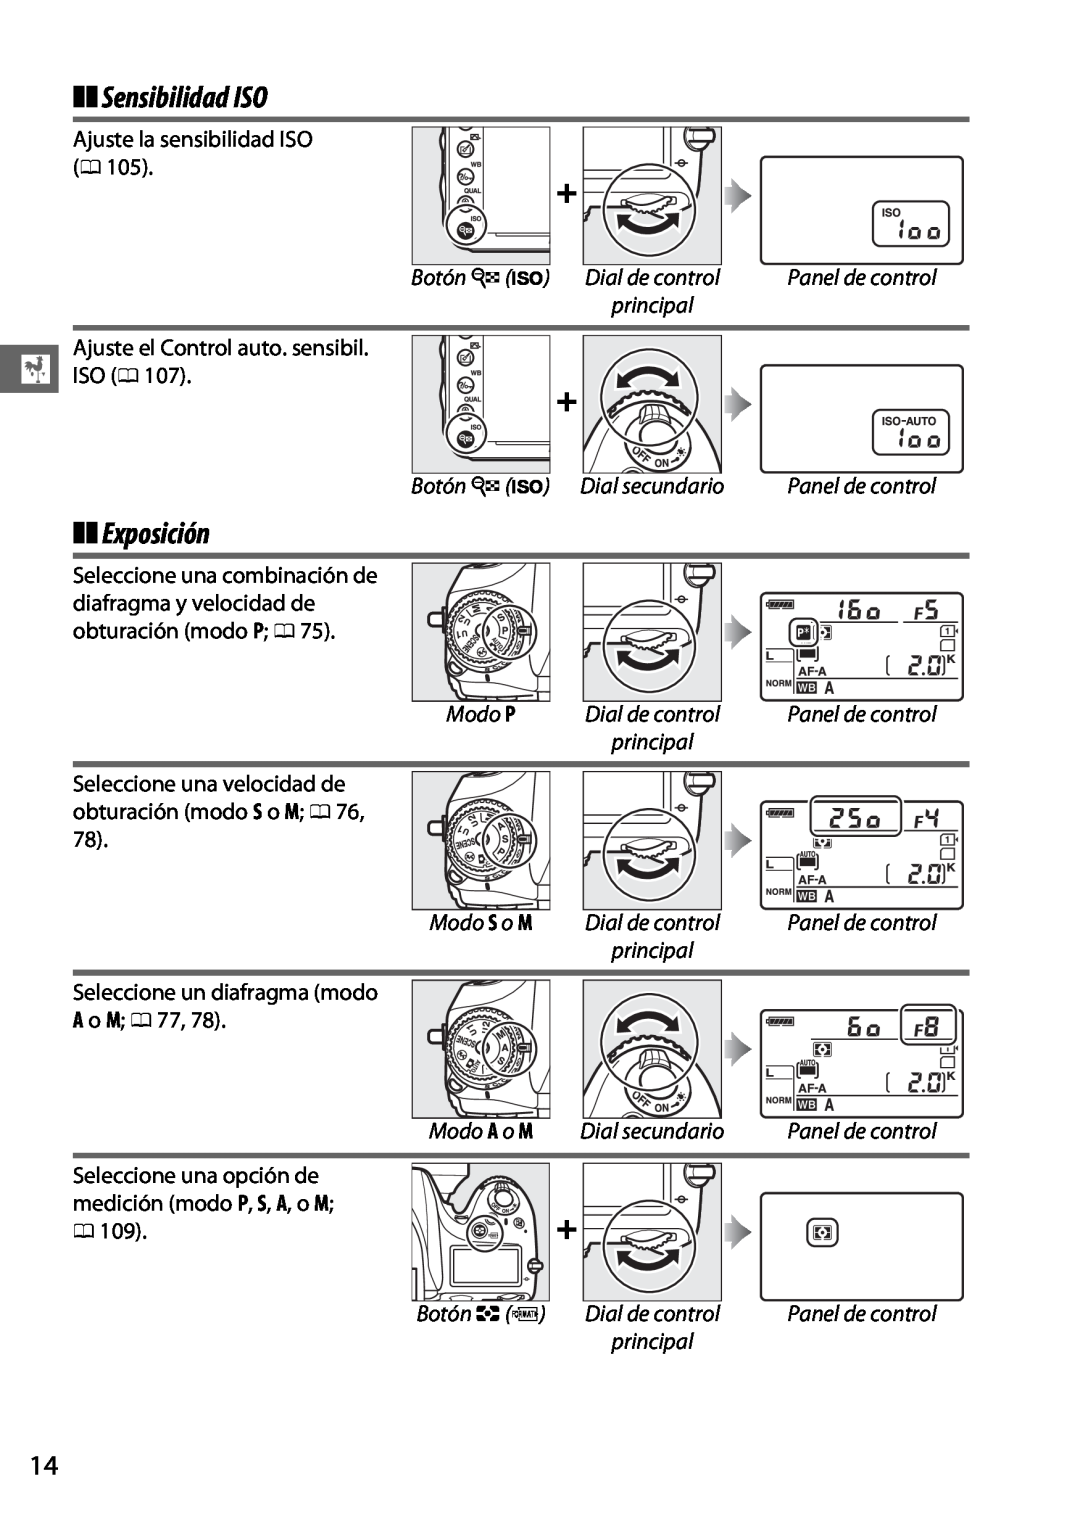 Nikon D600 manual Sensibilidad ISO, Exposición, Botón W S Dial secundario, Modo P, Modo S o M, Modo A o M, Botón Z Q 